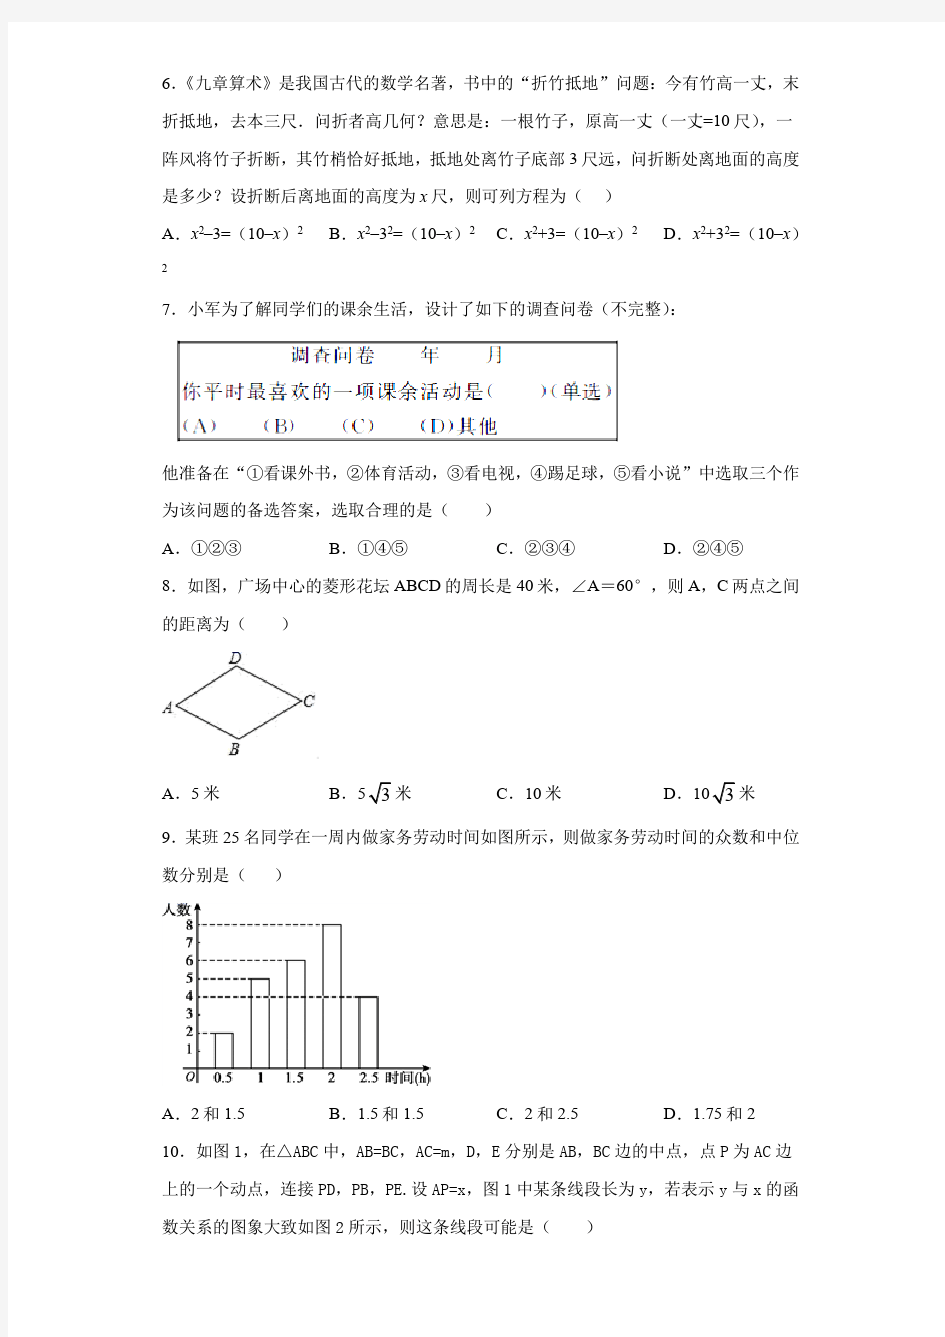 【全国校级联考】北京市朝阳区2021届九年级中考数学一模试题